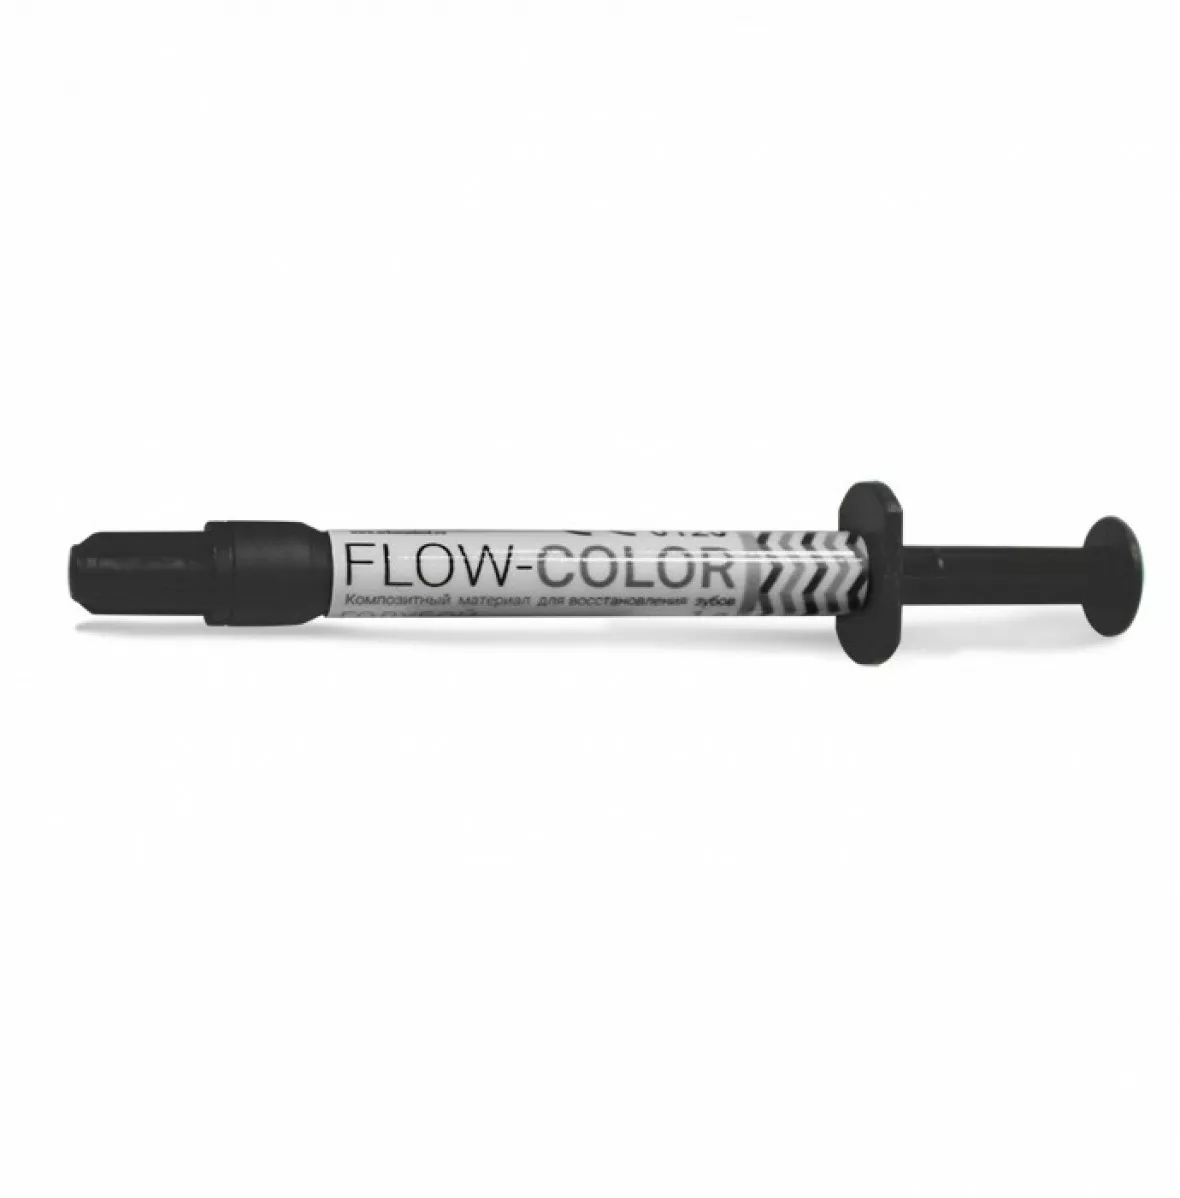 FLOW-COLOR - цветной композит, Черный